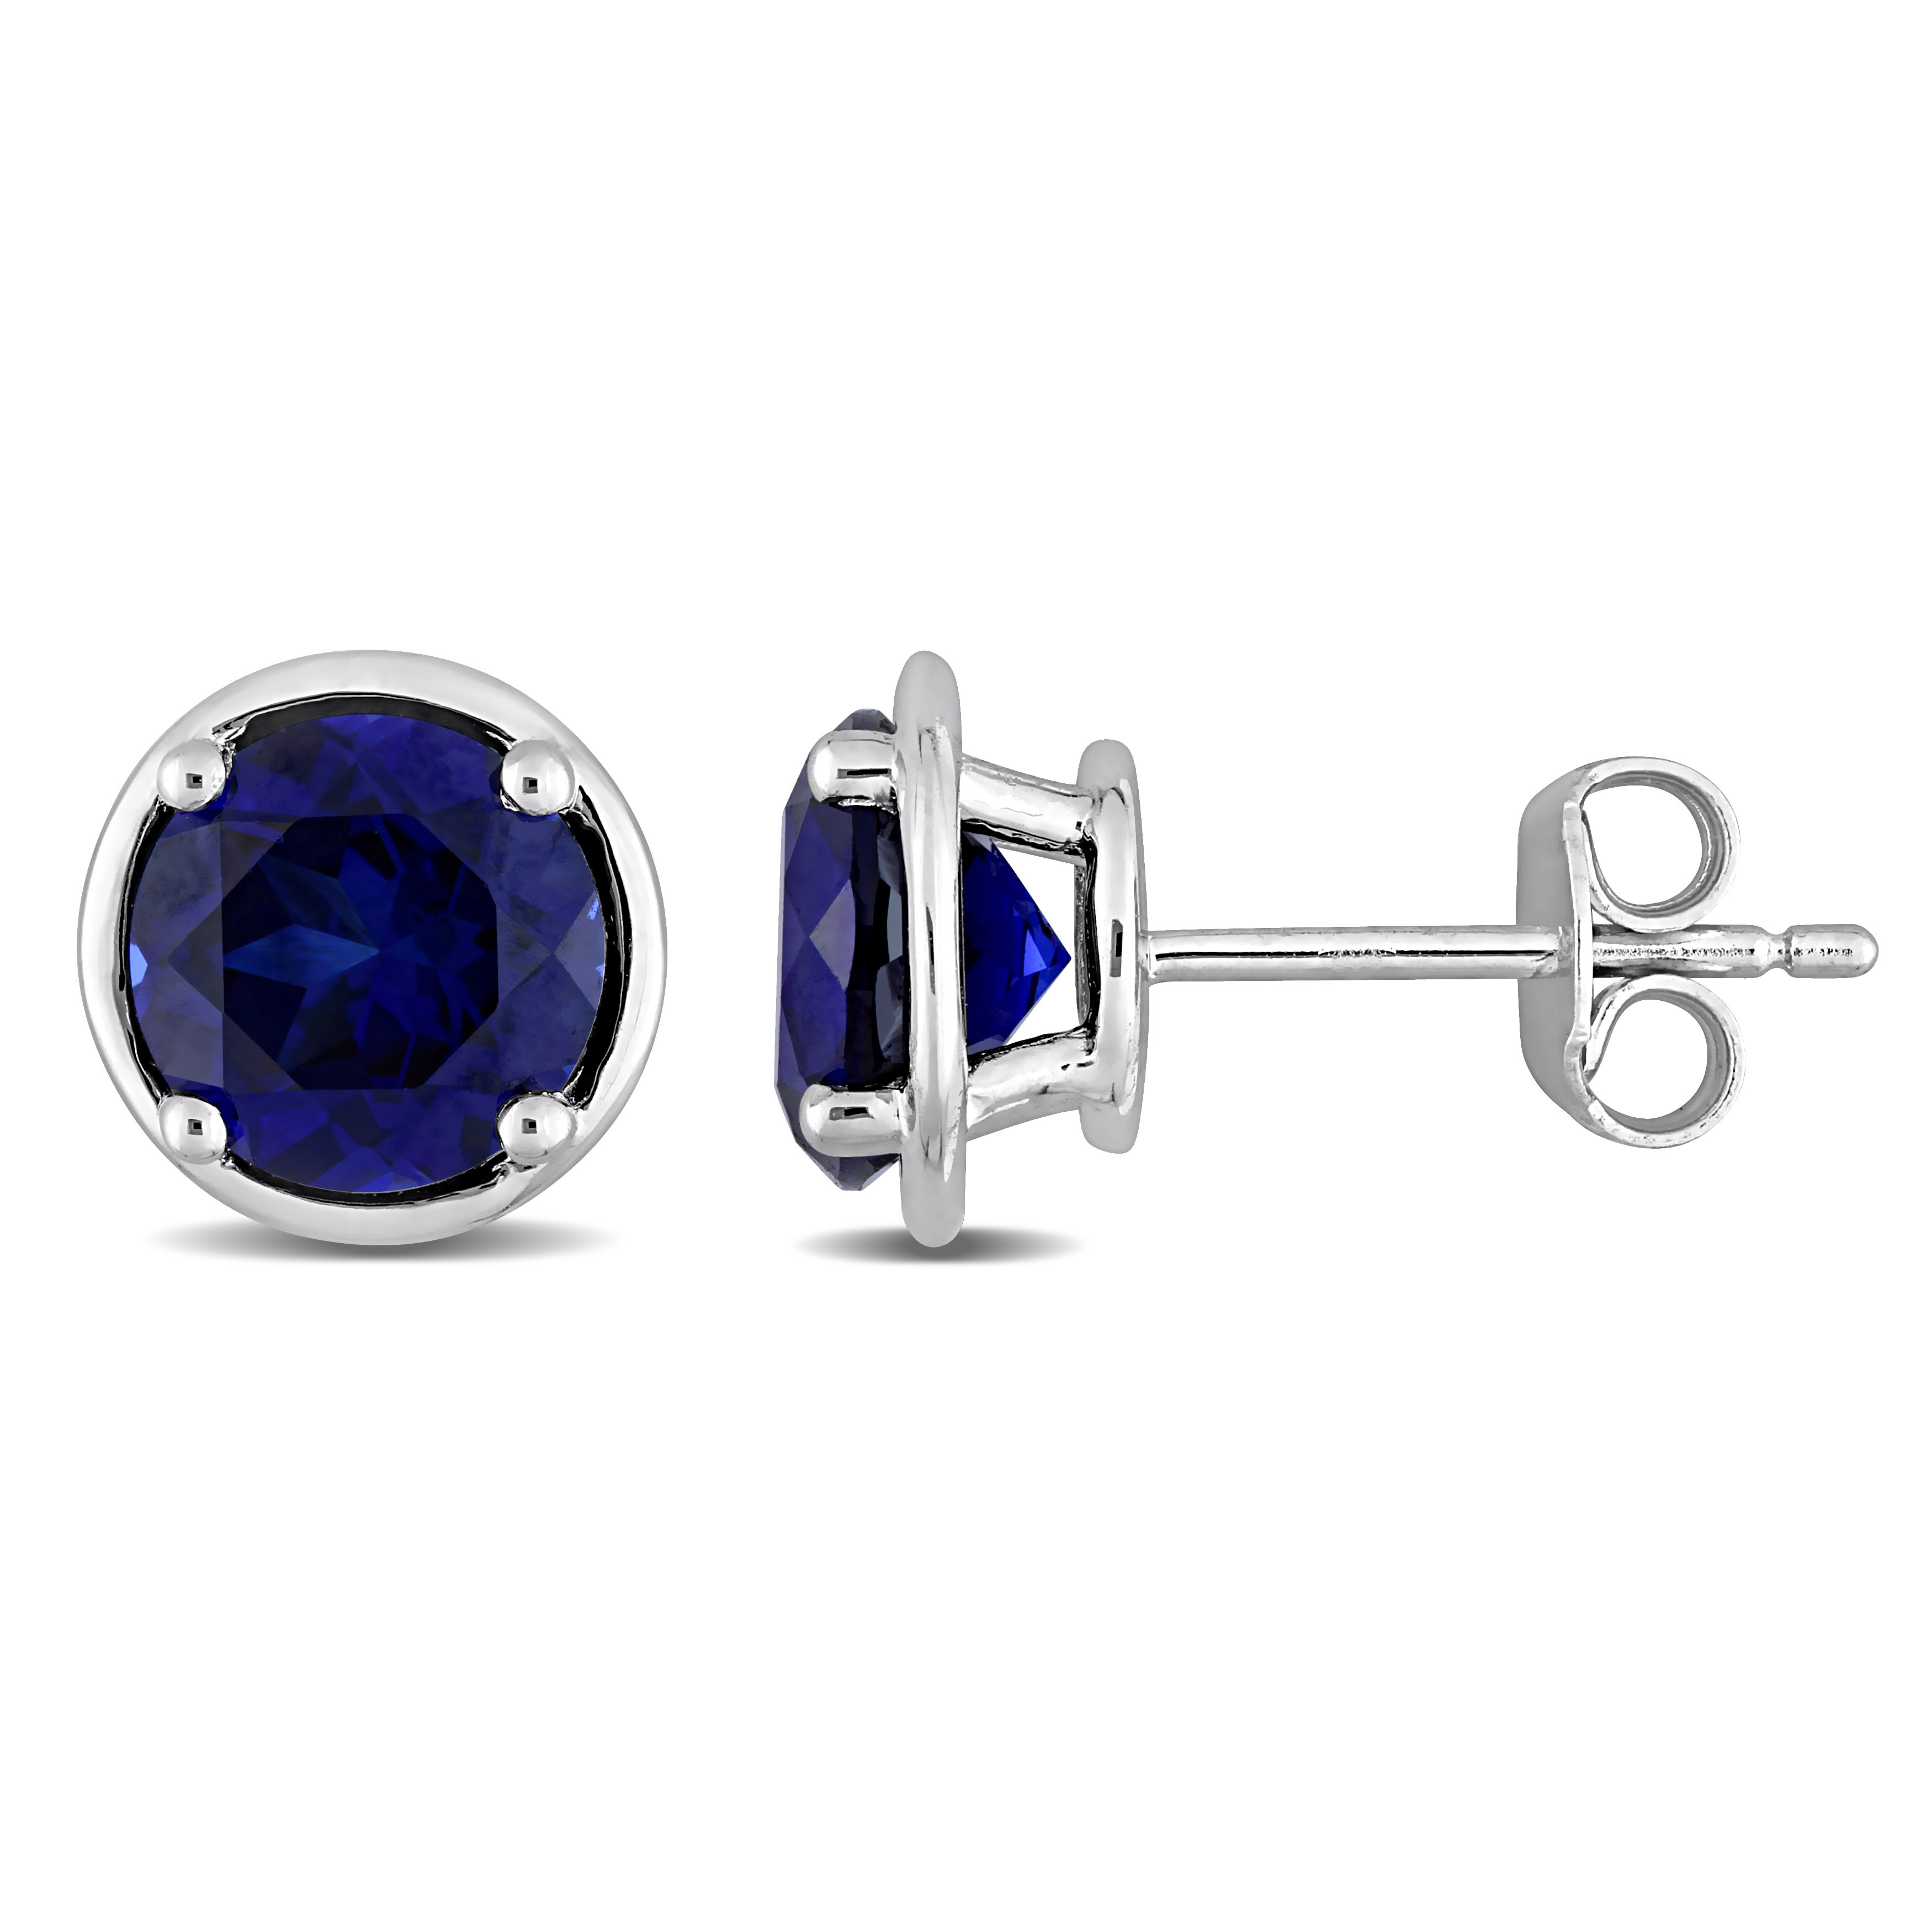 3 1/4 CT TGW Created Sapphire Bezel Style Stud Earrings in Sterling Silver